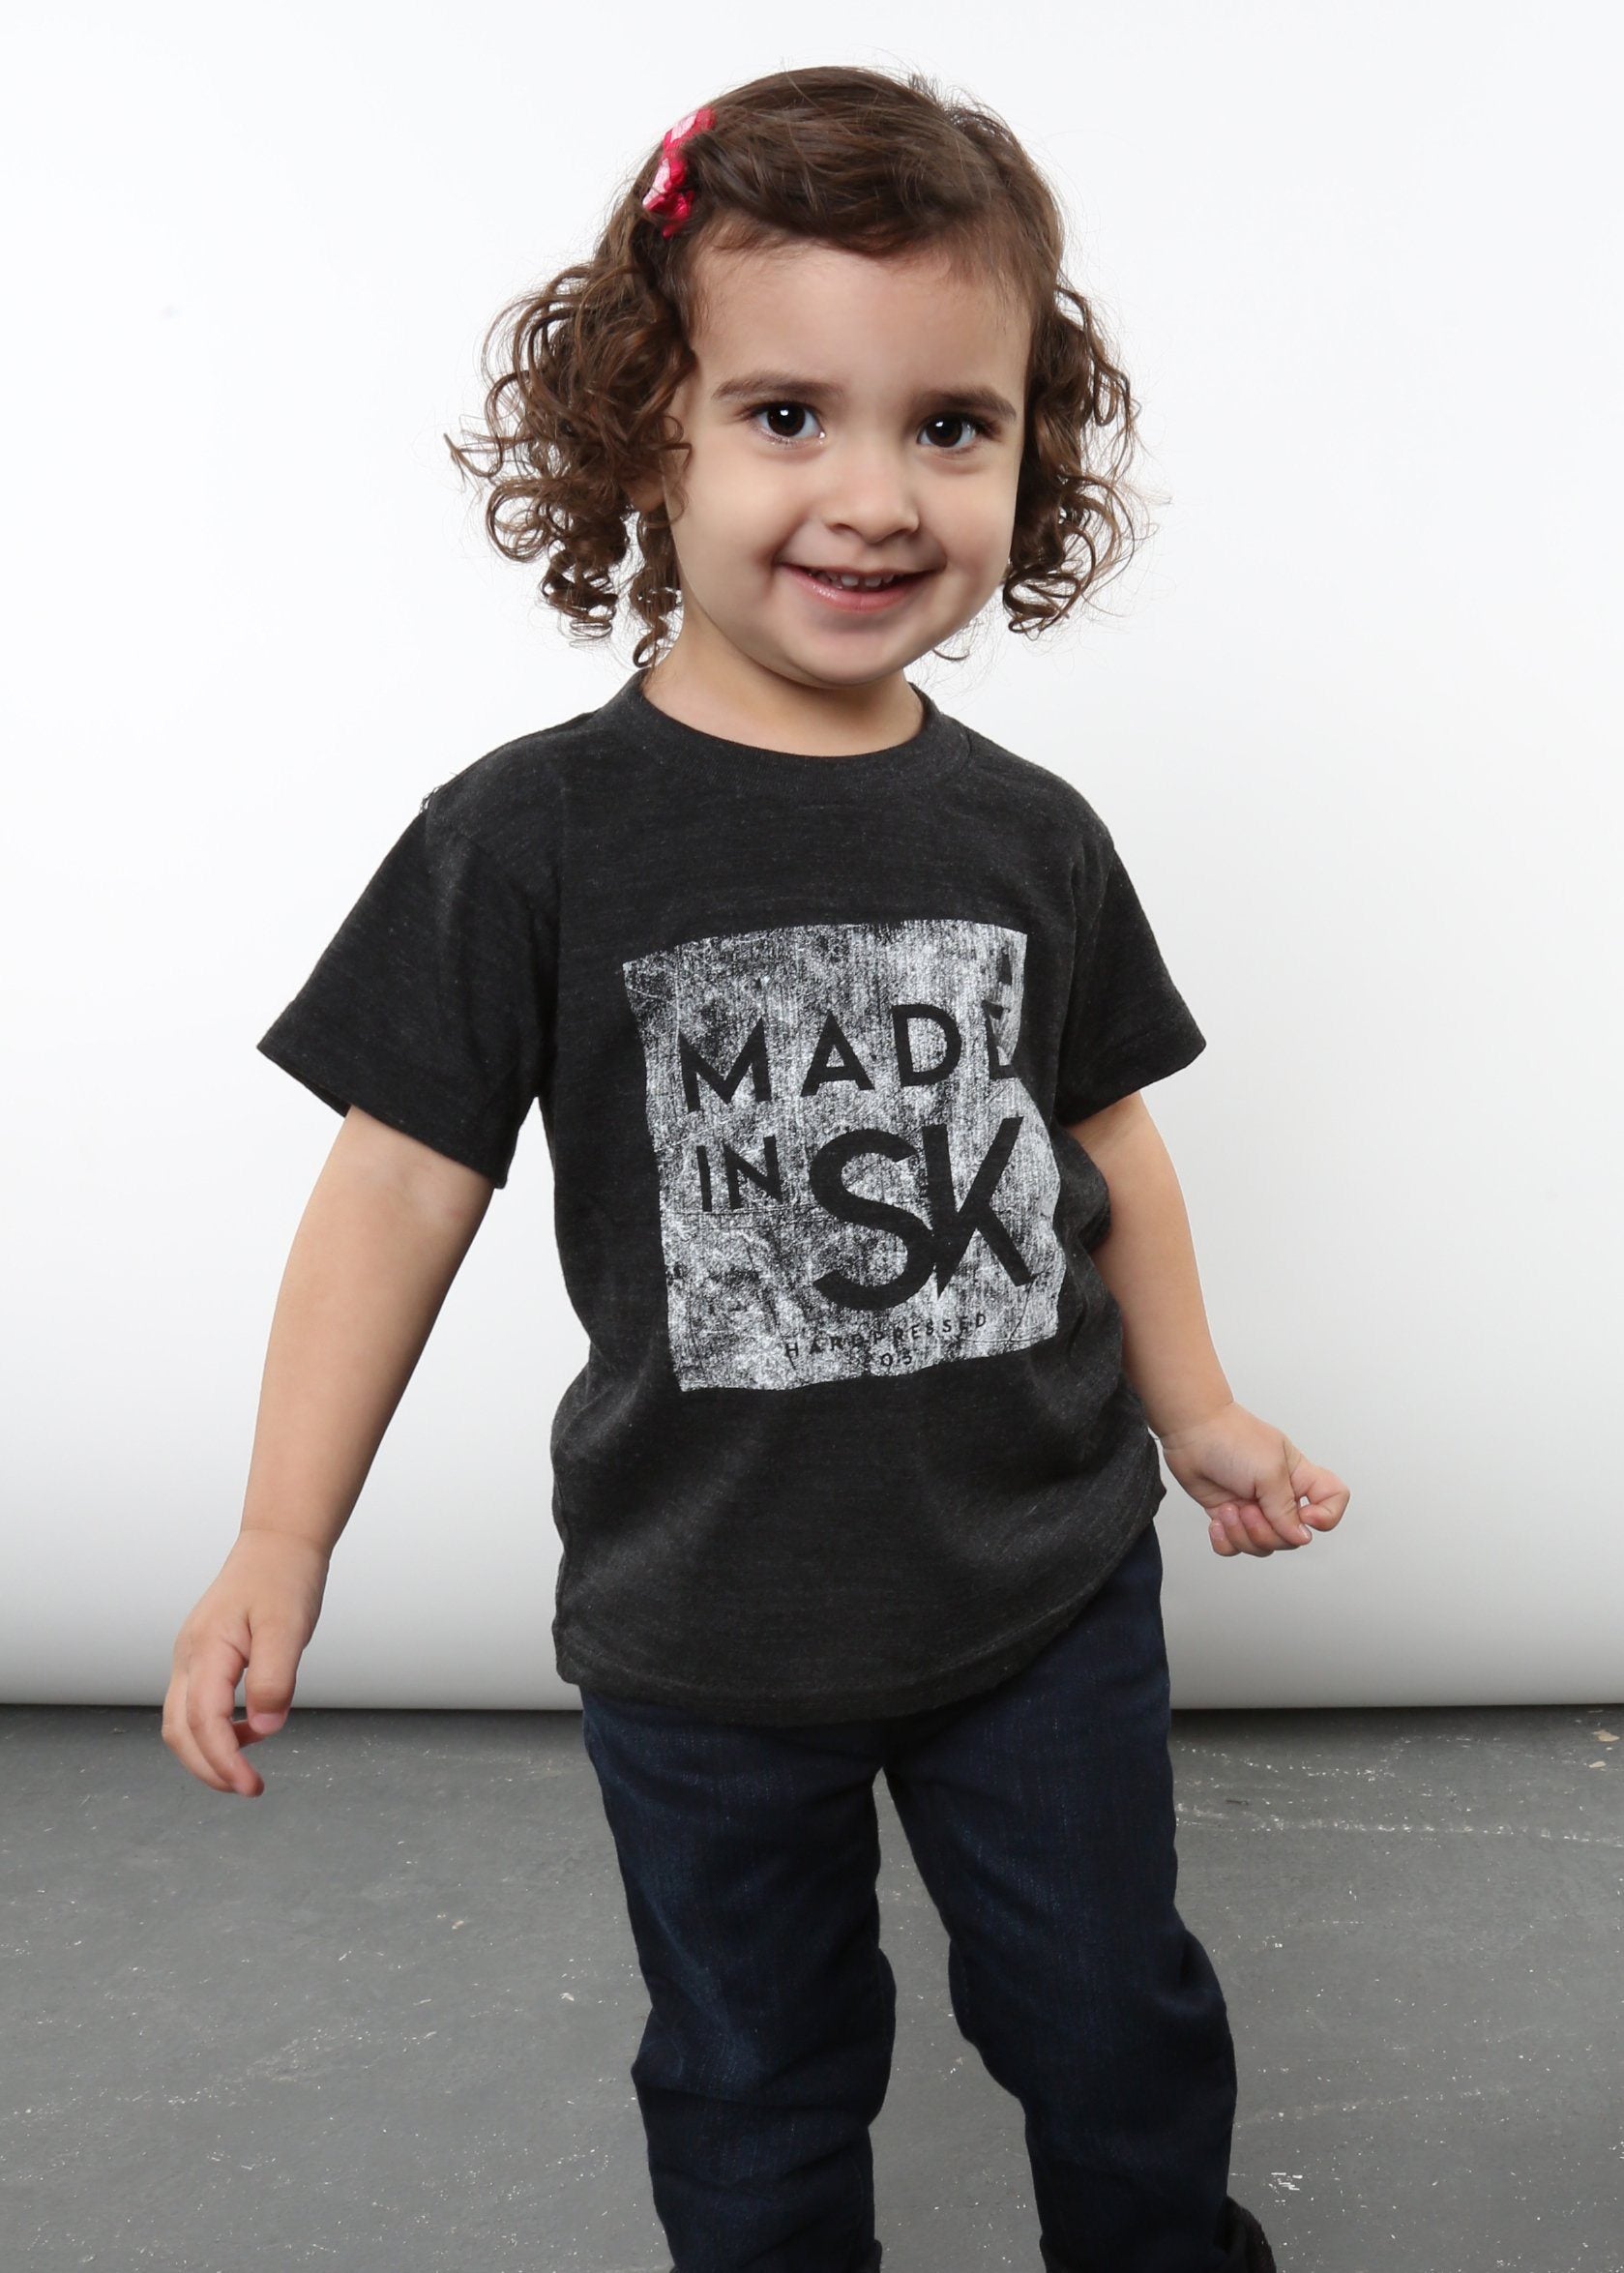 Made in SK Tee v4 | Tri-Black | Kids - Hardpressed Print Studio